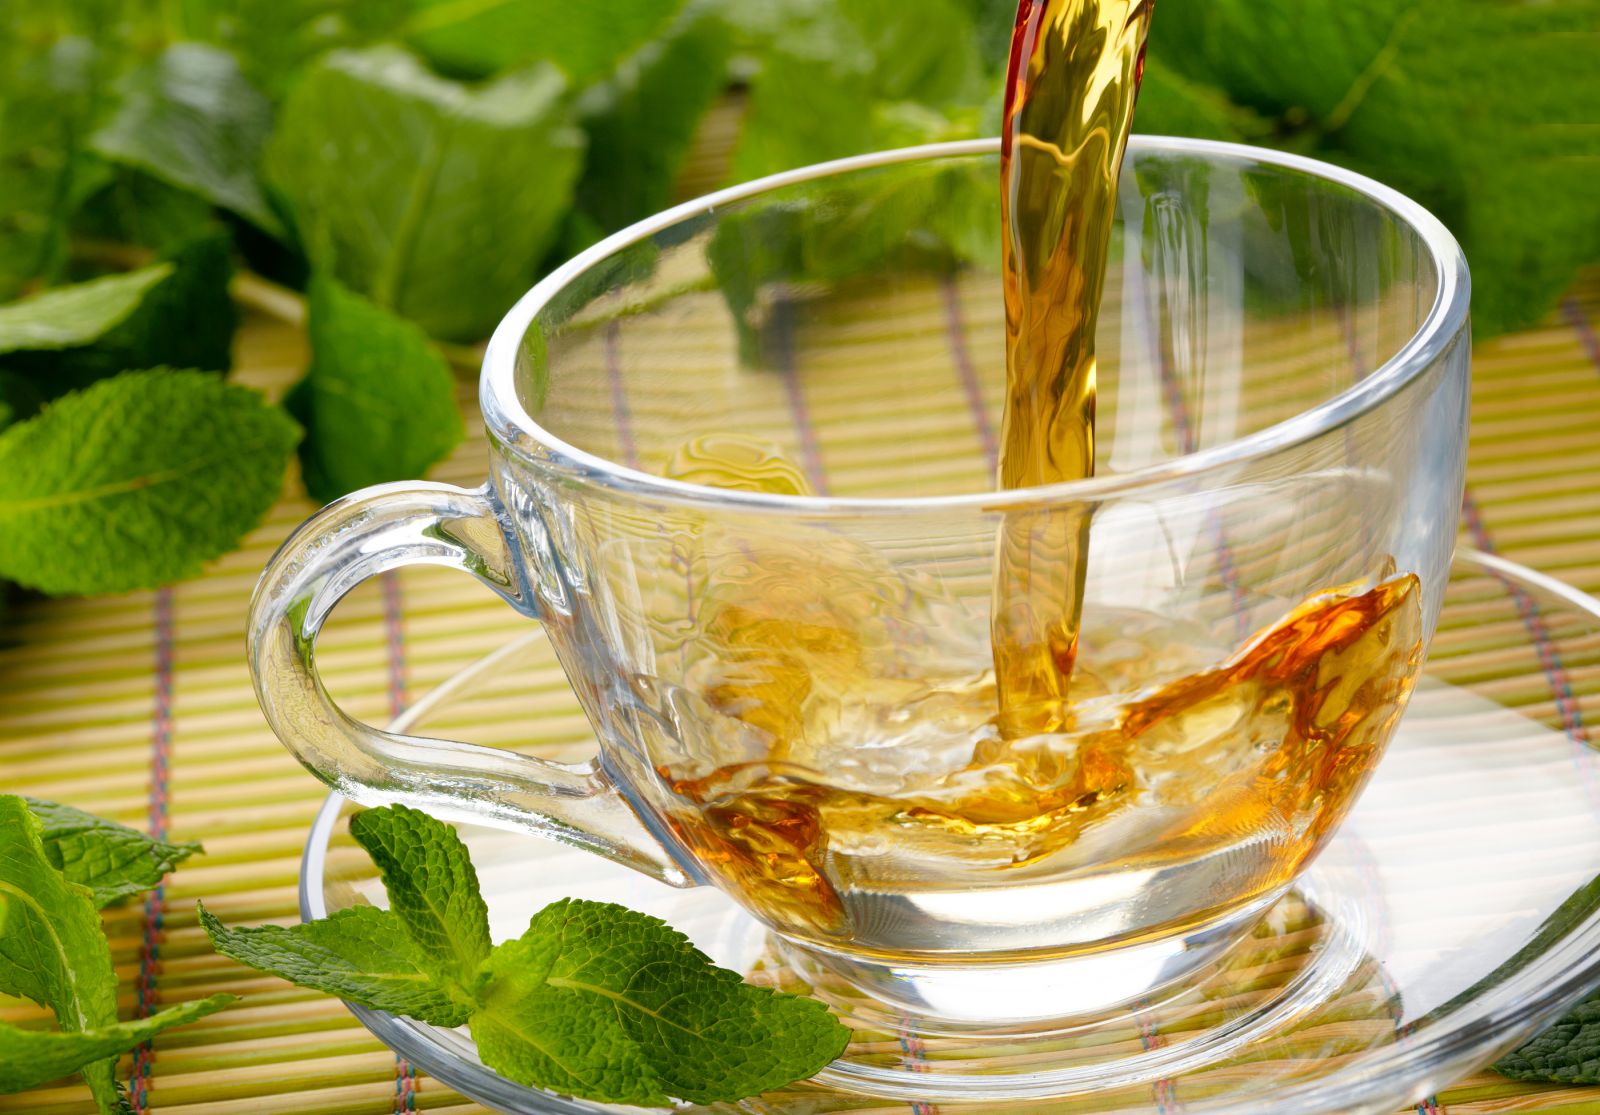 بعض أنواع الشاي قد يتسبب بسرطان الكبد